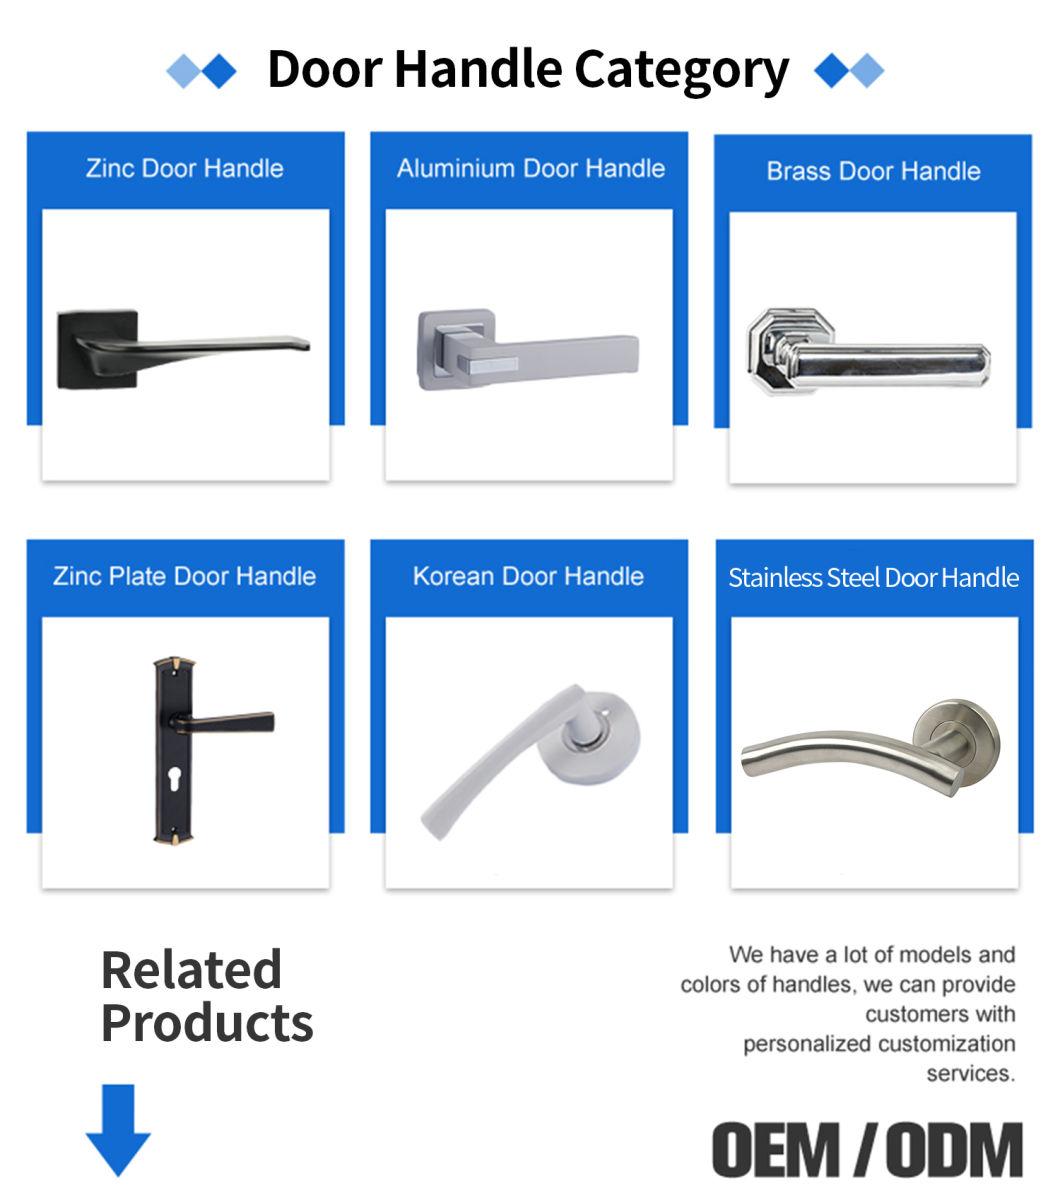 Security Iron/Wooden Construction Derocation Zinc Alloy Door Handle for Office